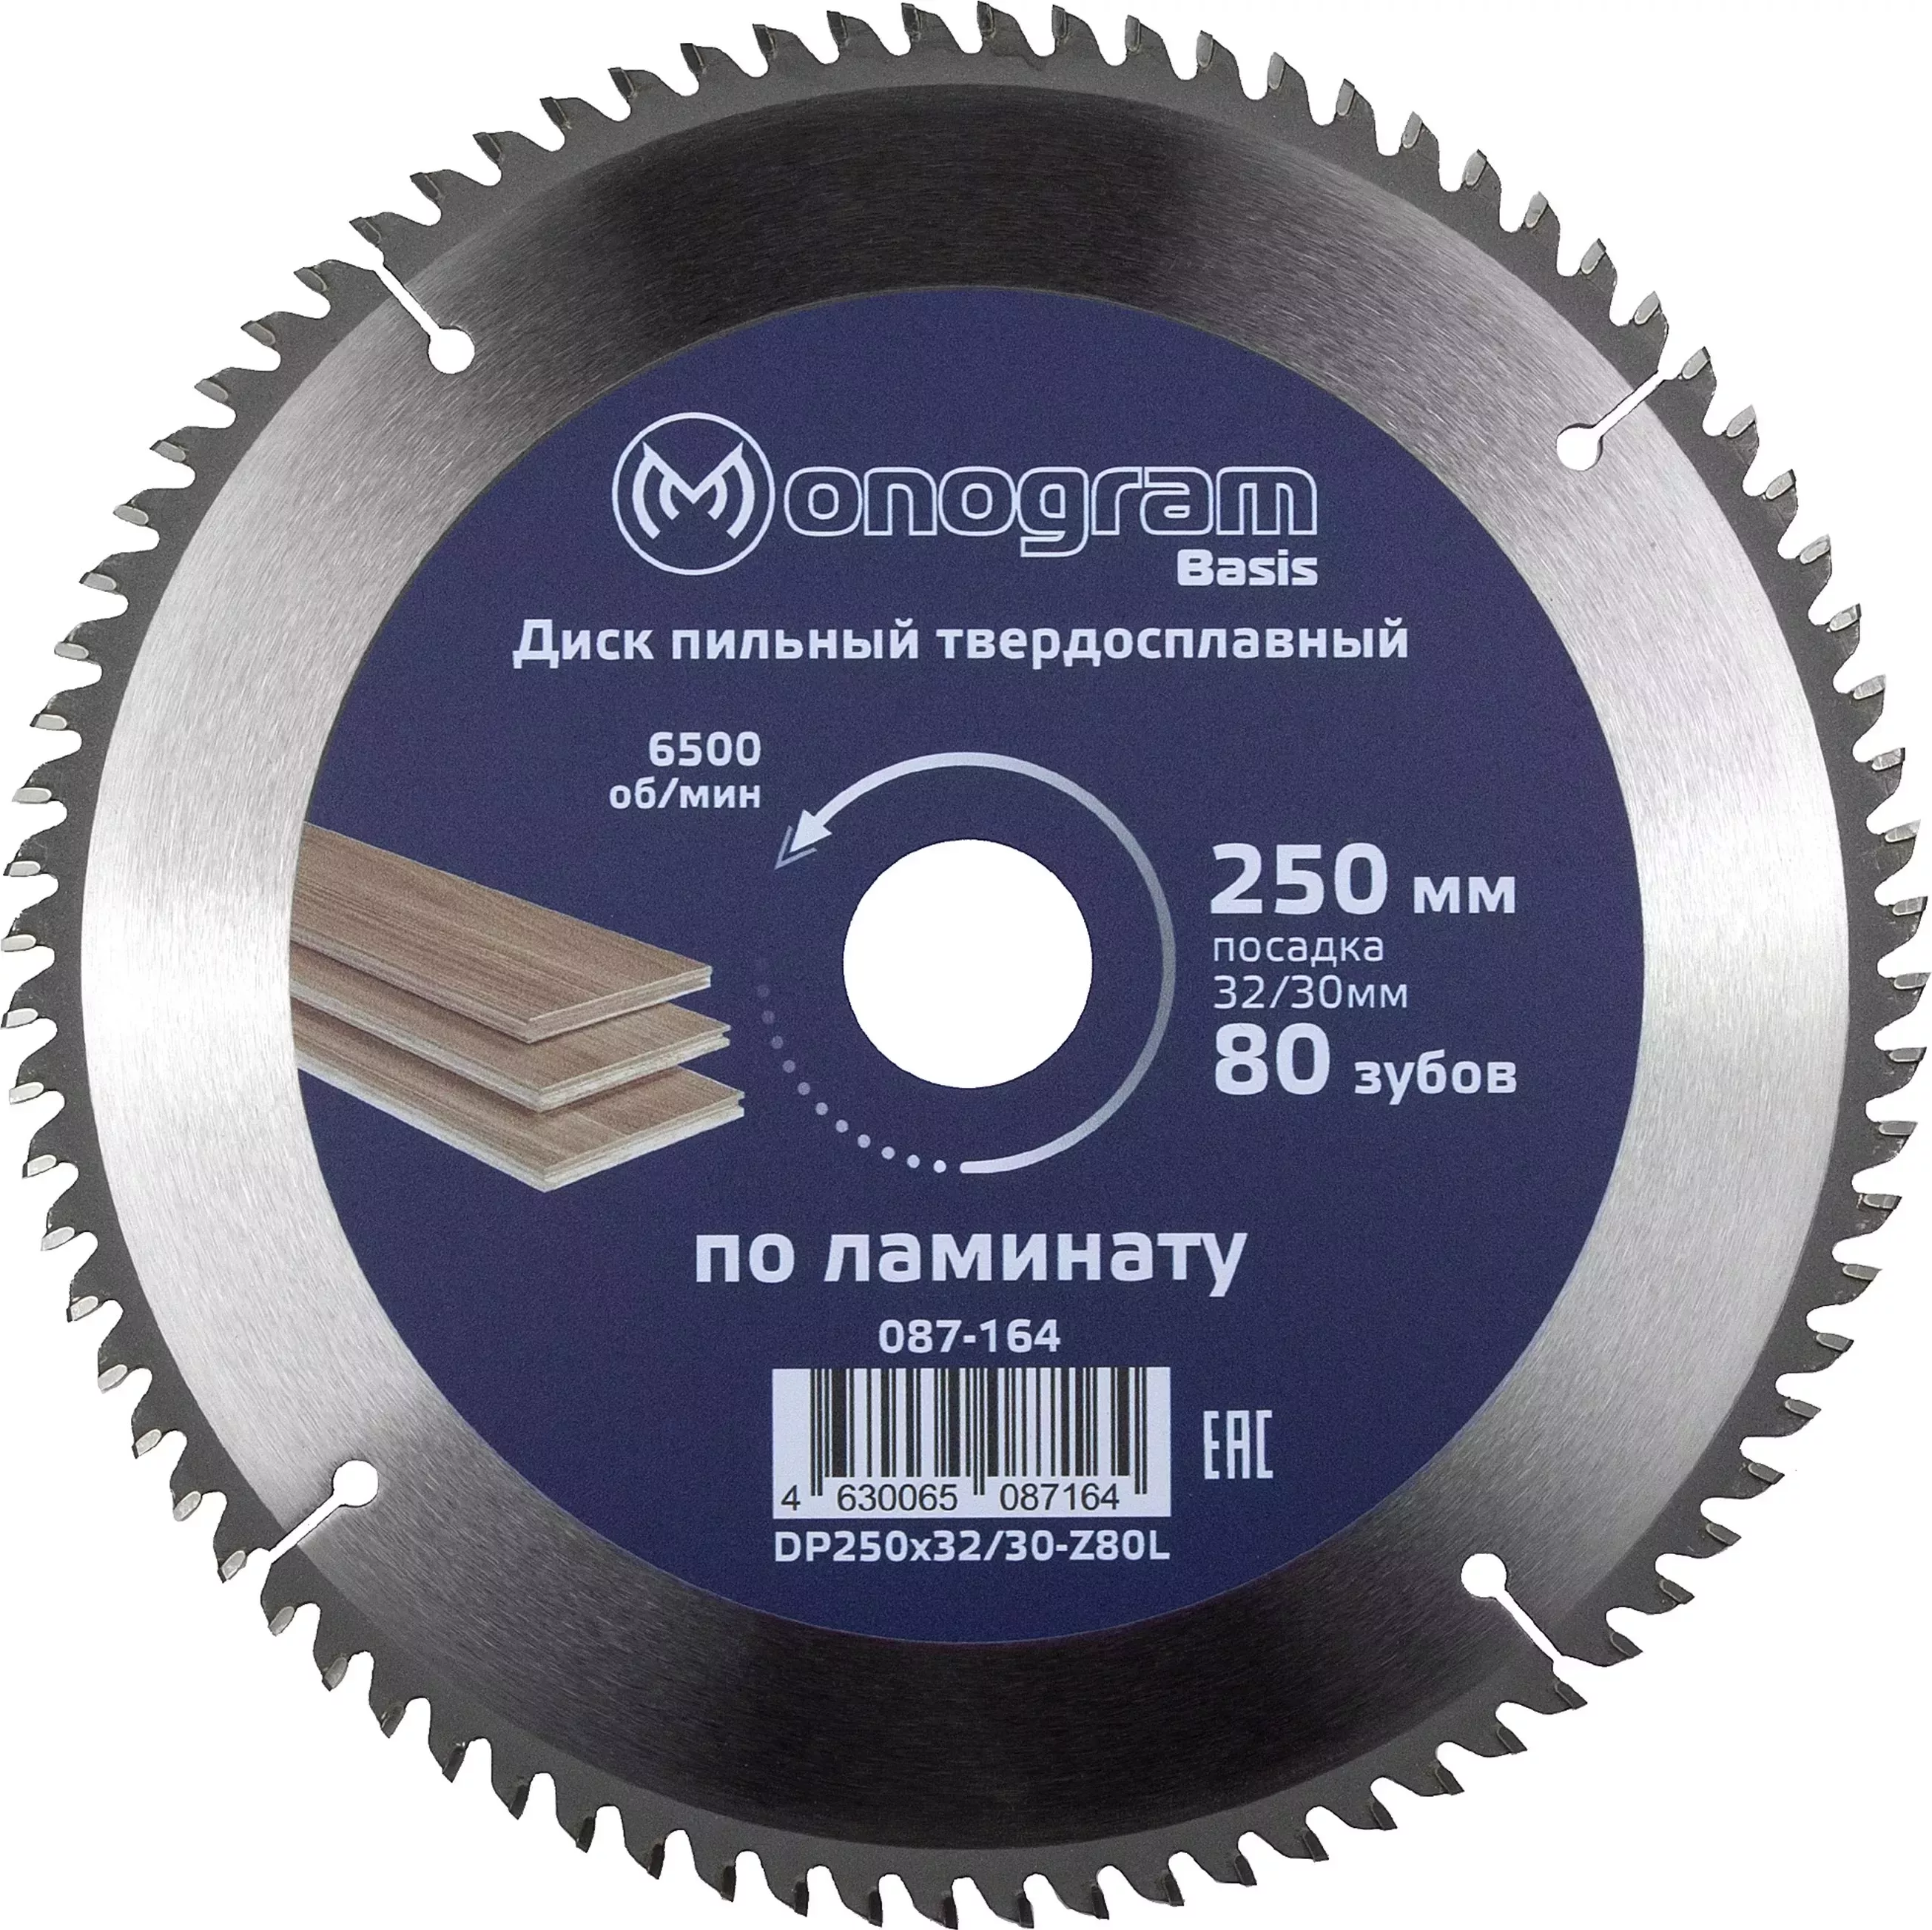 Диск пильный MONOGRAM (087-164) твердосплавный Basis 250х32/30мм, 80 зубов по ламинату, ЛДСП, чистов. пил.